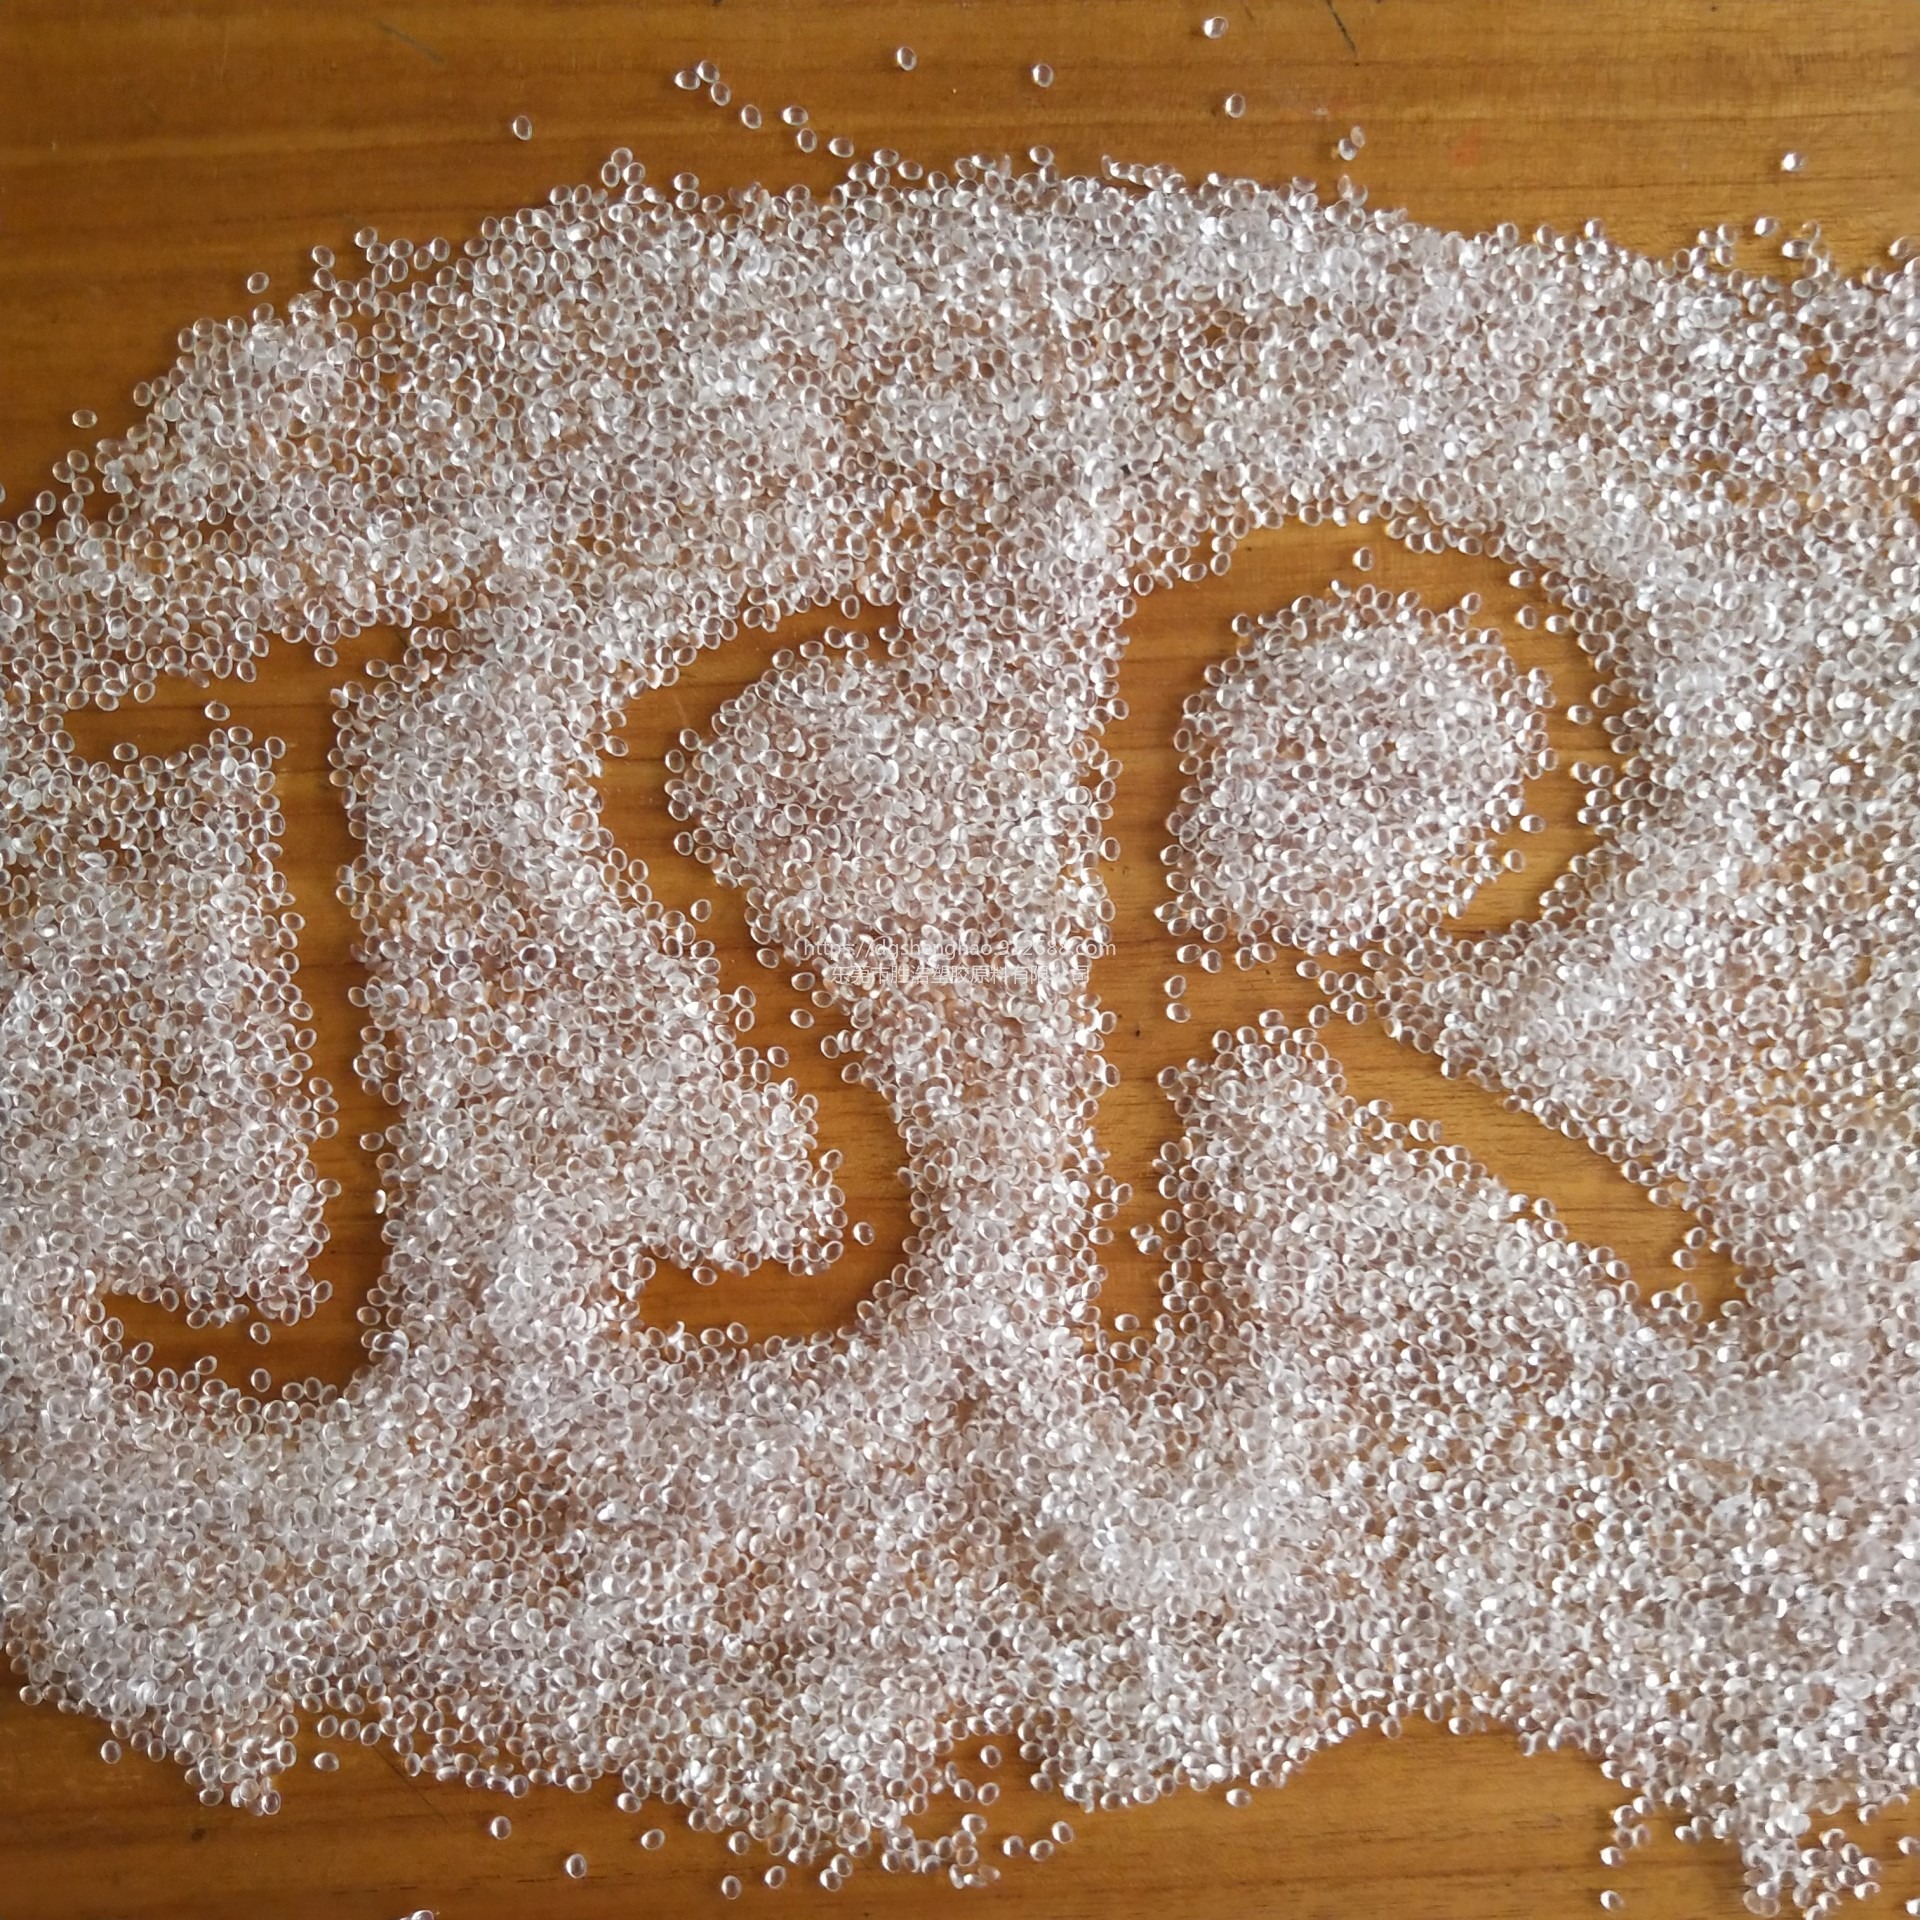 日本JSR透明颗粒RB820用于发泡鞋底EVA减少蜂窝孔洞发泡不均匀现象 间规1/2聚丁二烯独特的热塑性弹性体